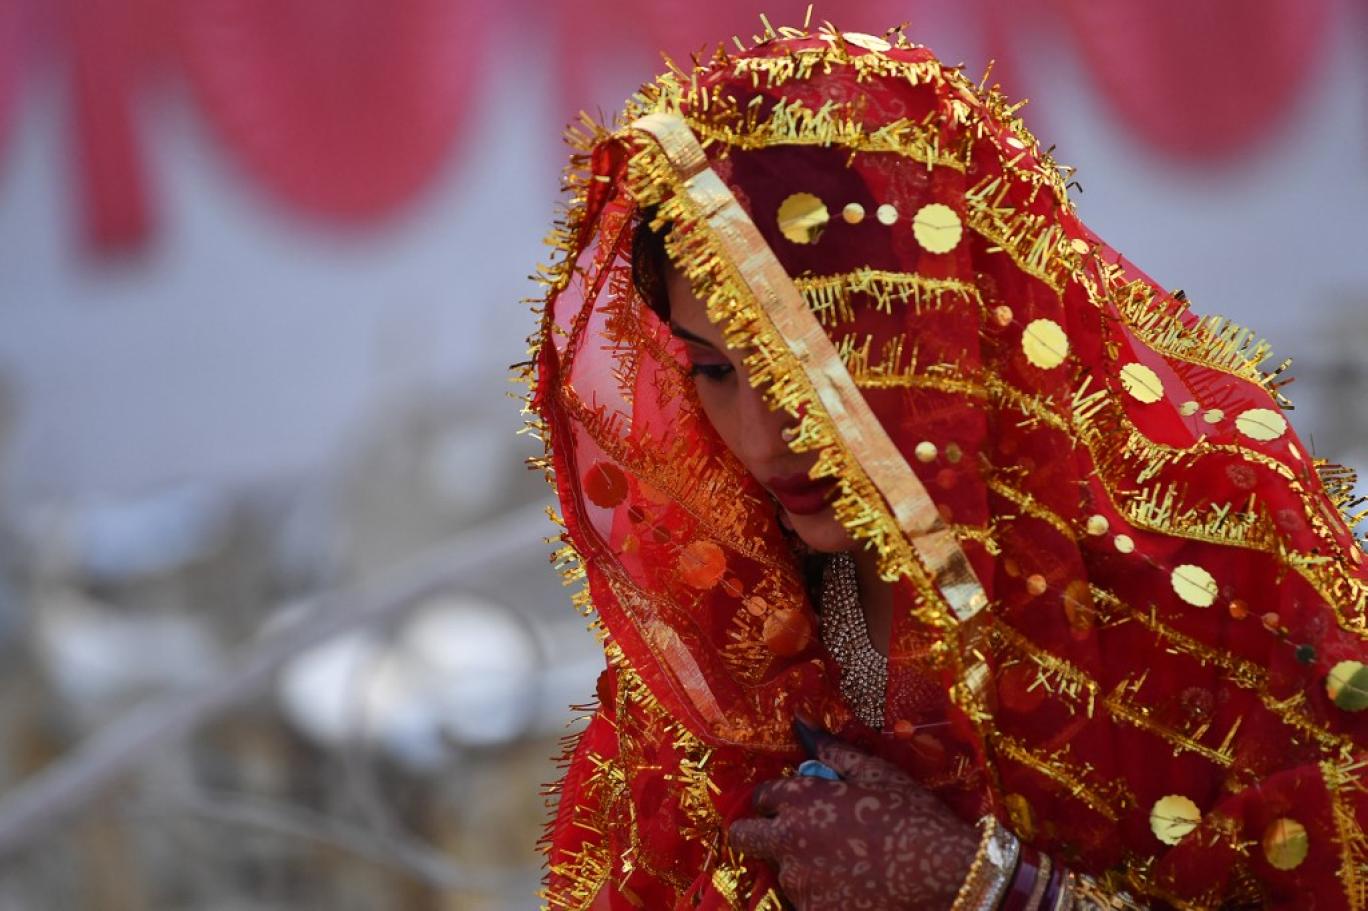 بلوچستان کم عمری کی شادی روکنے کا قانون چار سال سے زیر التوا 